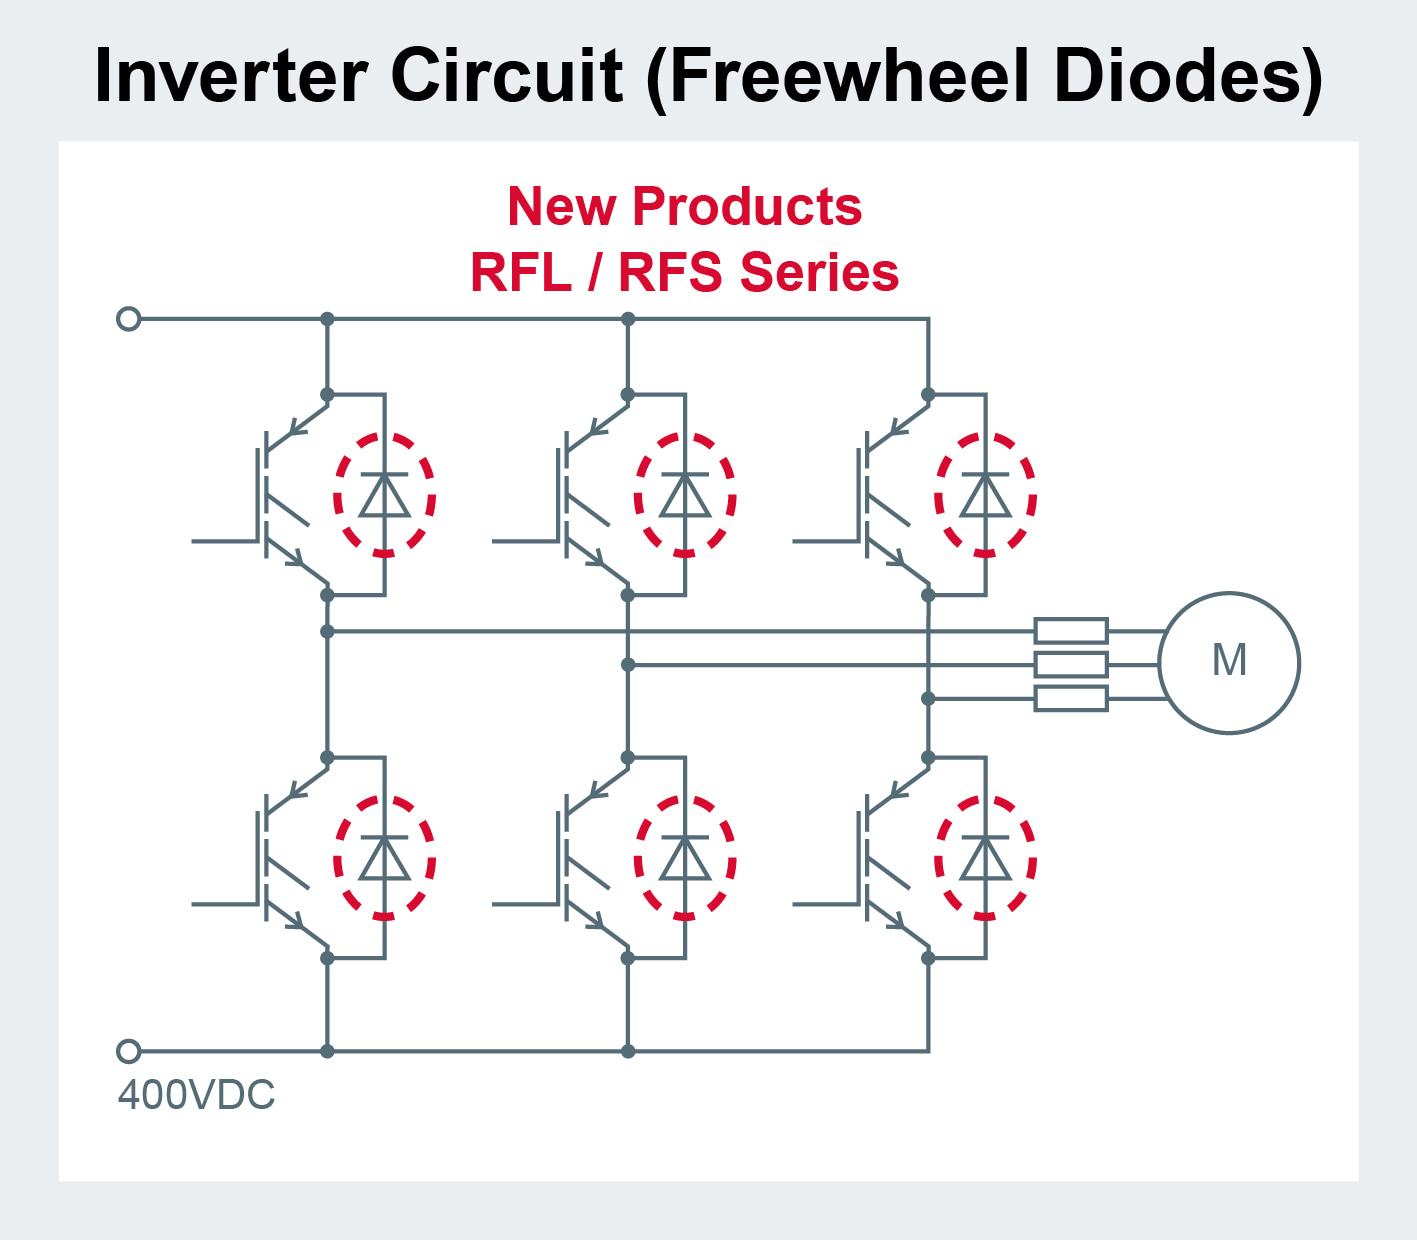 Inverter Circuit (Freewheel Diodes)